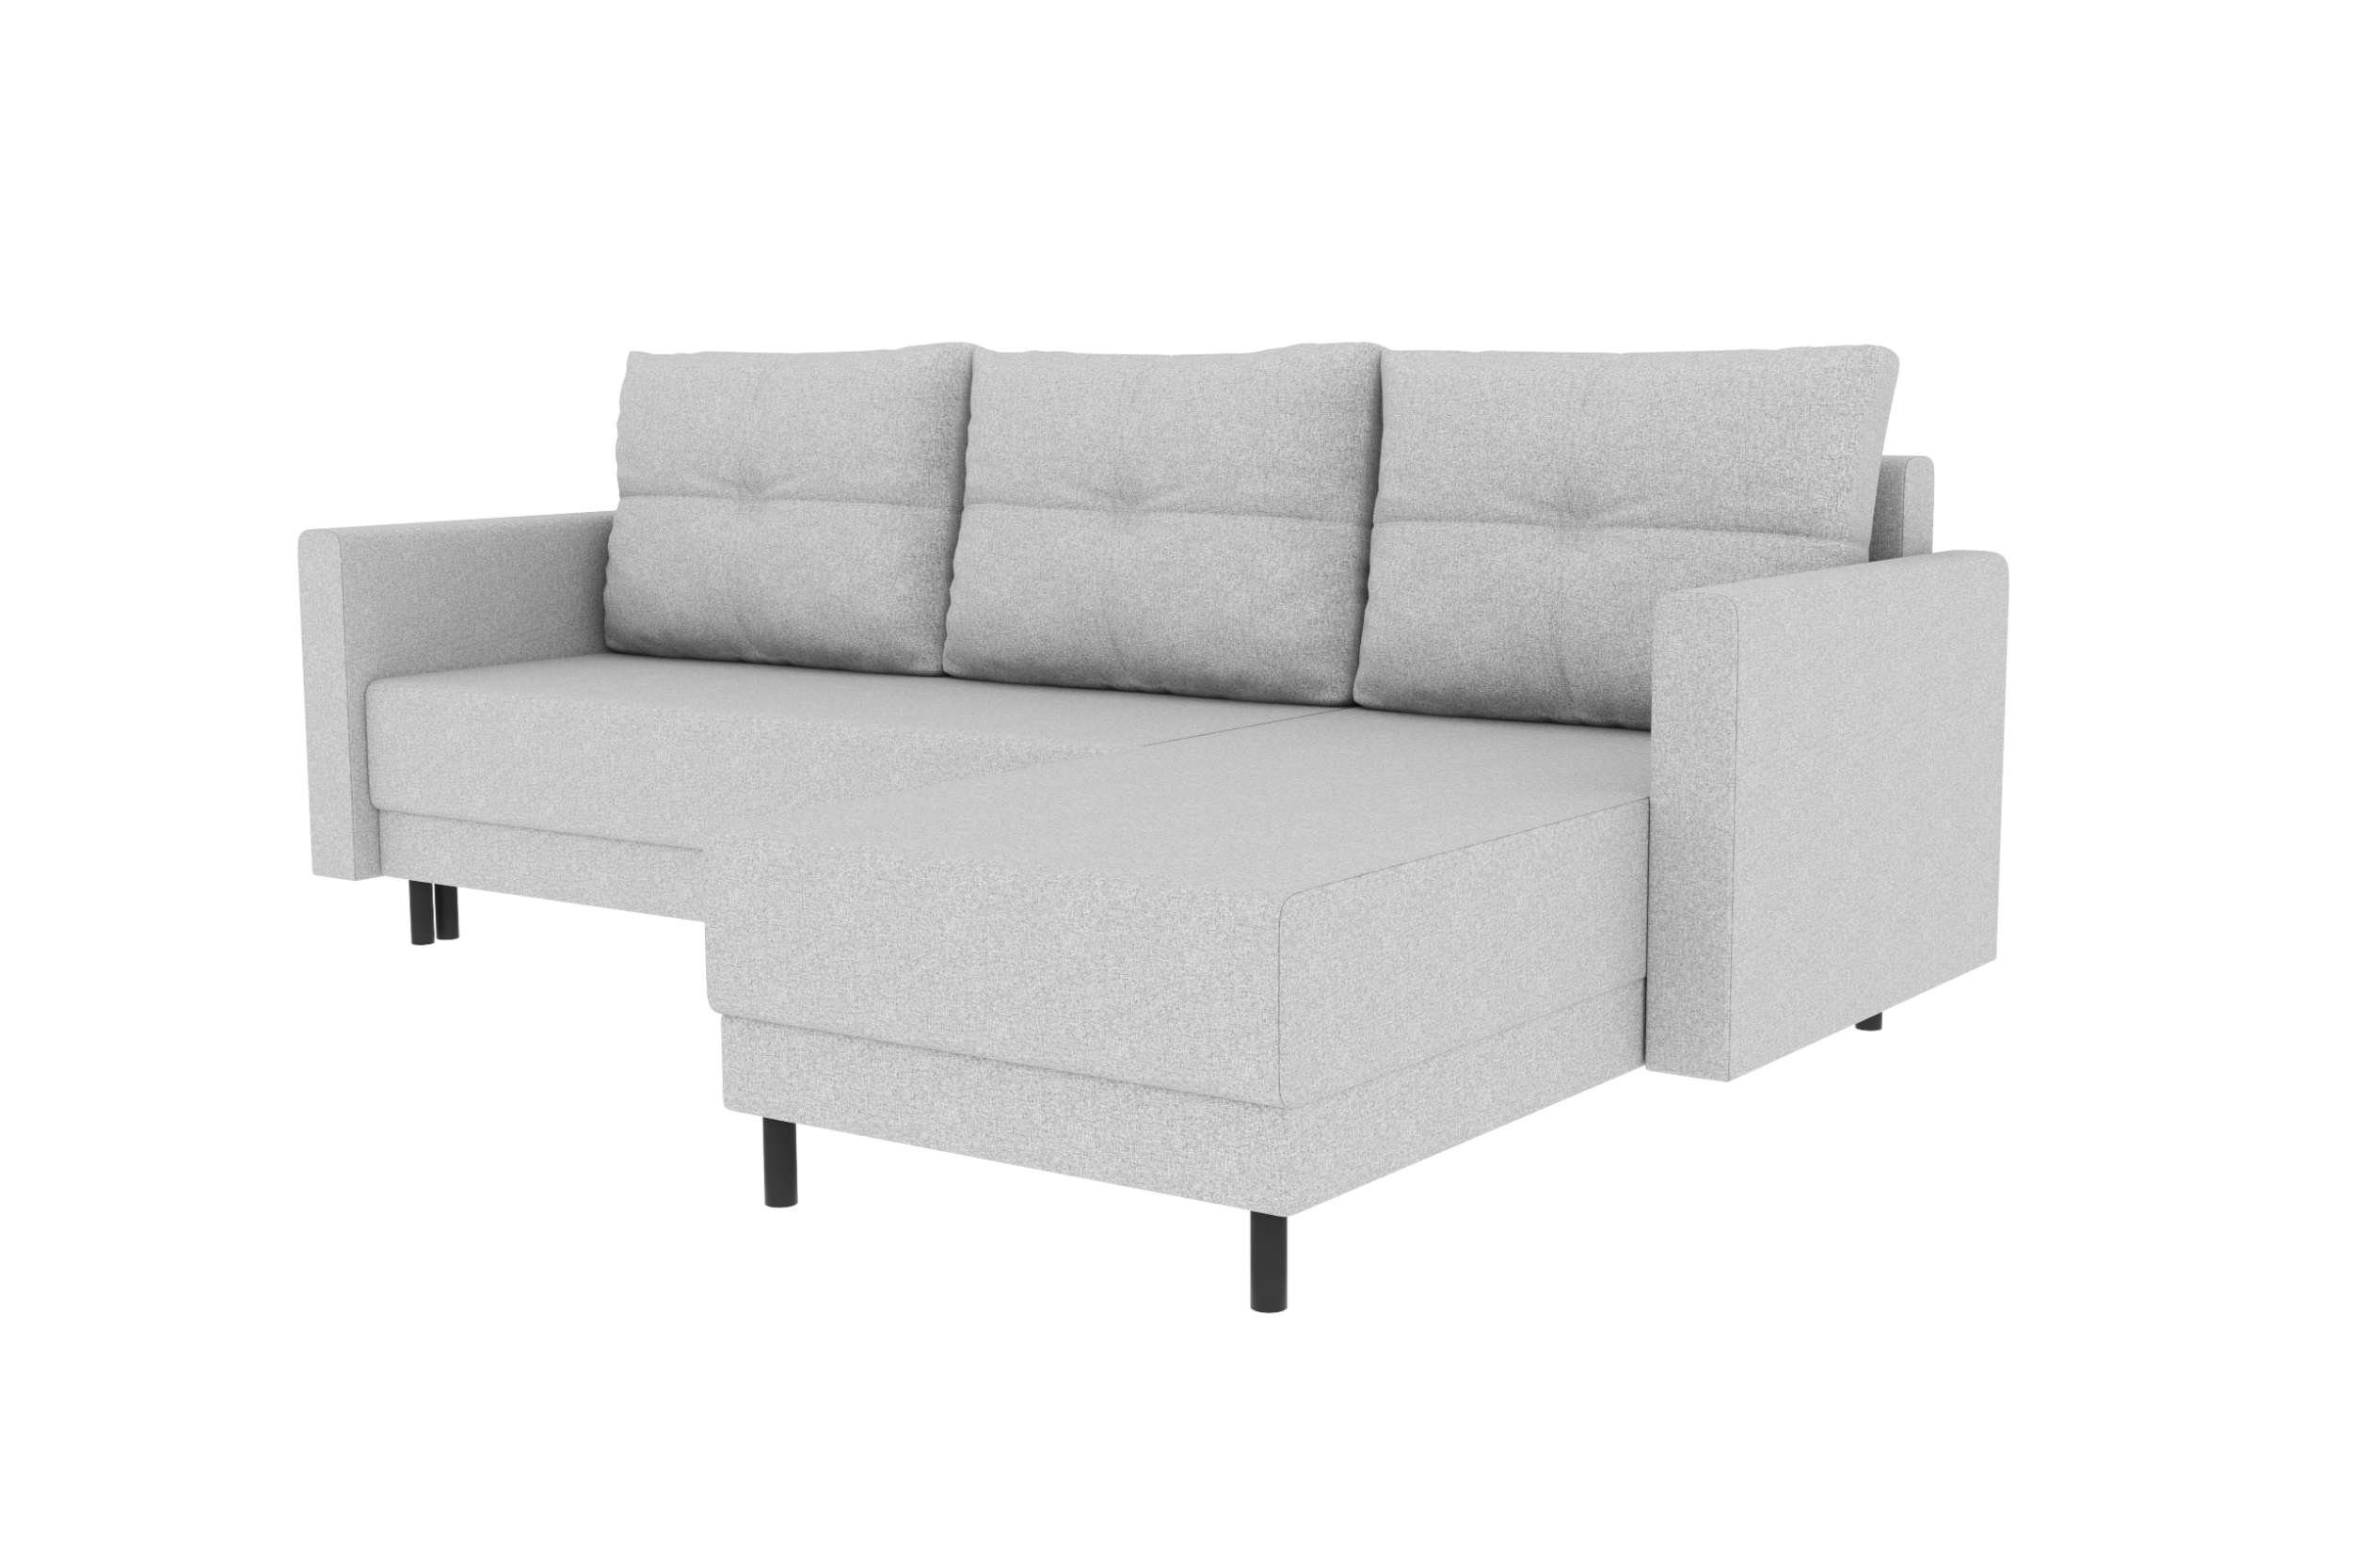 Stylefy Ecksofa Paloma, L-Form, Bettkasten, Modern mit Design Bettfunktion, mit Sofa, Sitzkomfort, Eckcouch